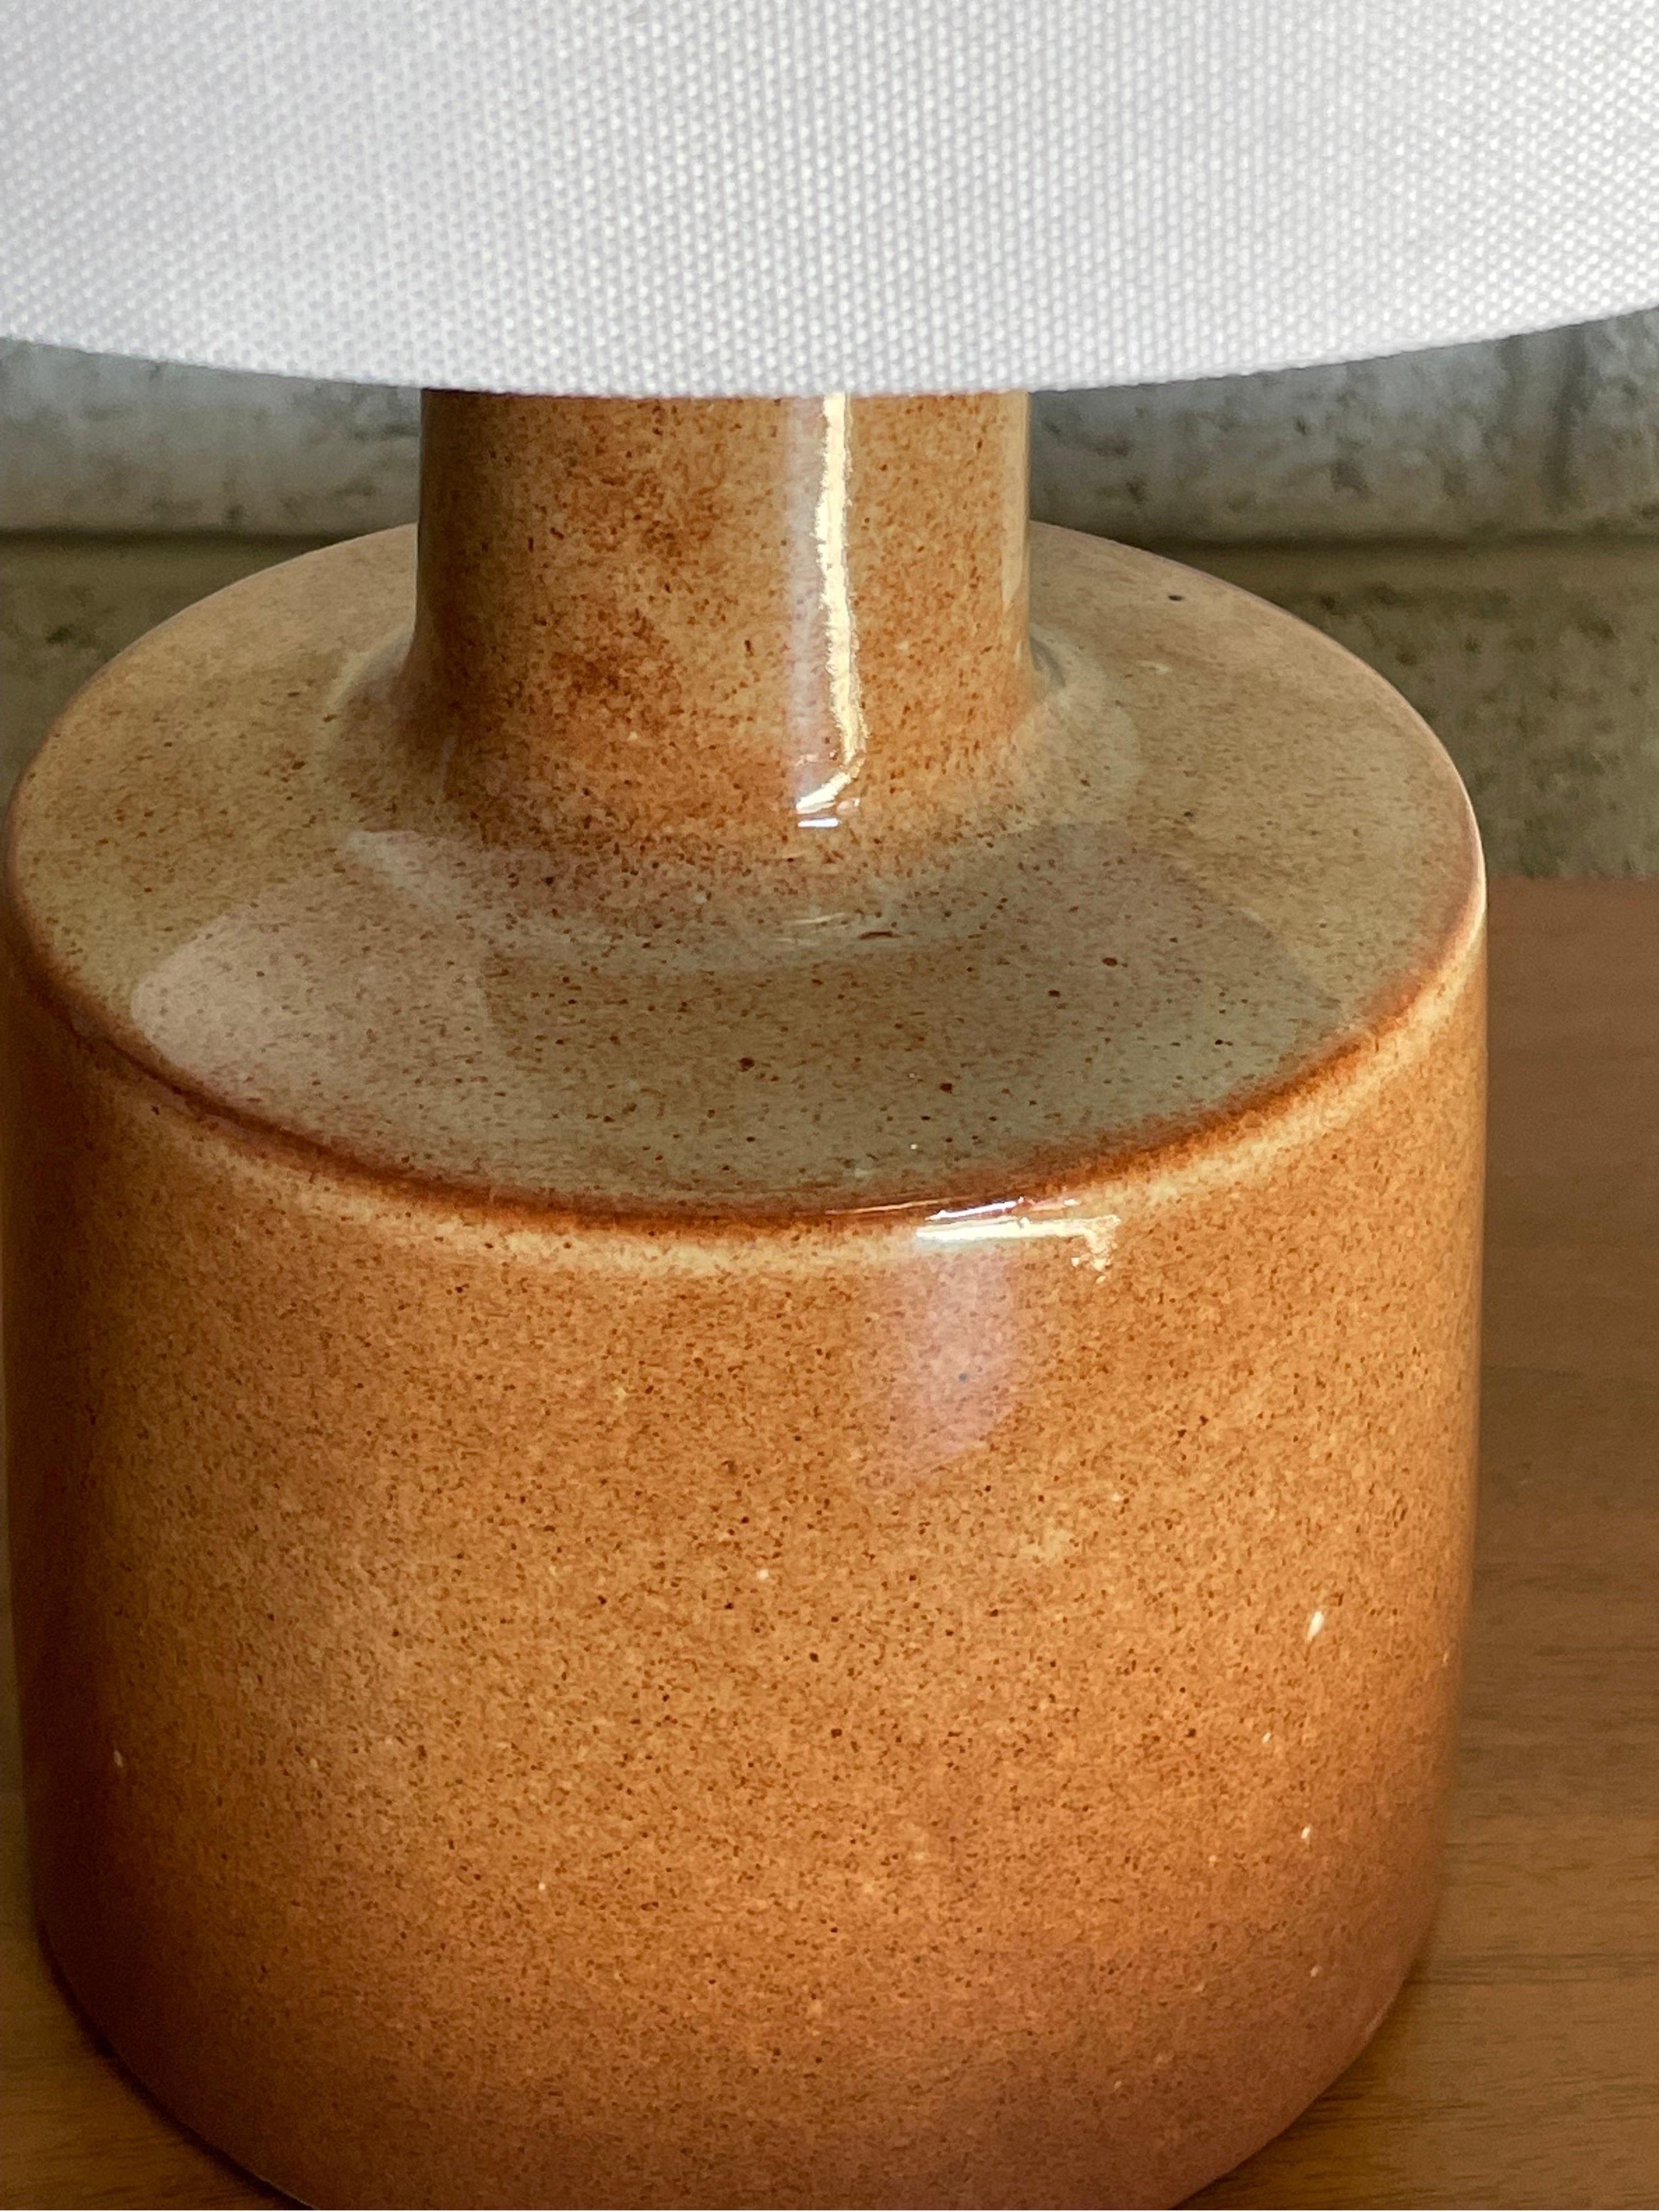 Lampe de table conçue par le duo de céramistes Jane et Gordon Martz pour Marshall Studios. La couleur est une couleur inhabituelle semblable à la terre cuite avec un glaçage brillant. 

Dimensions générales : 
16